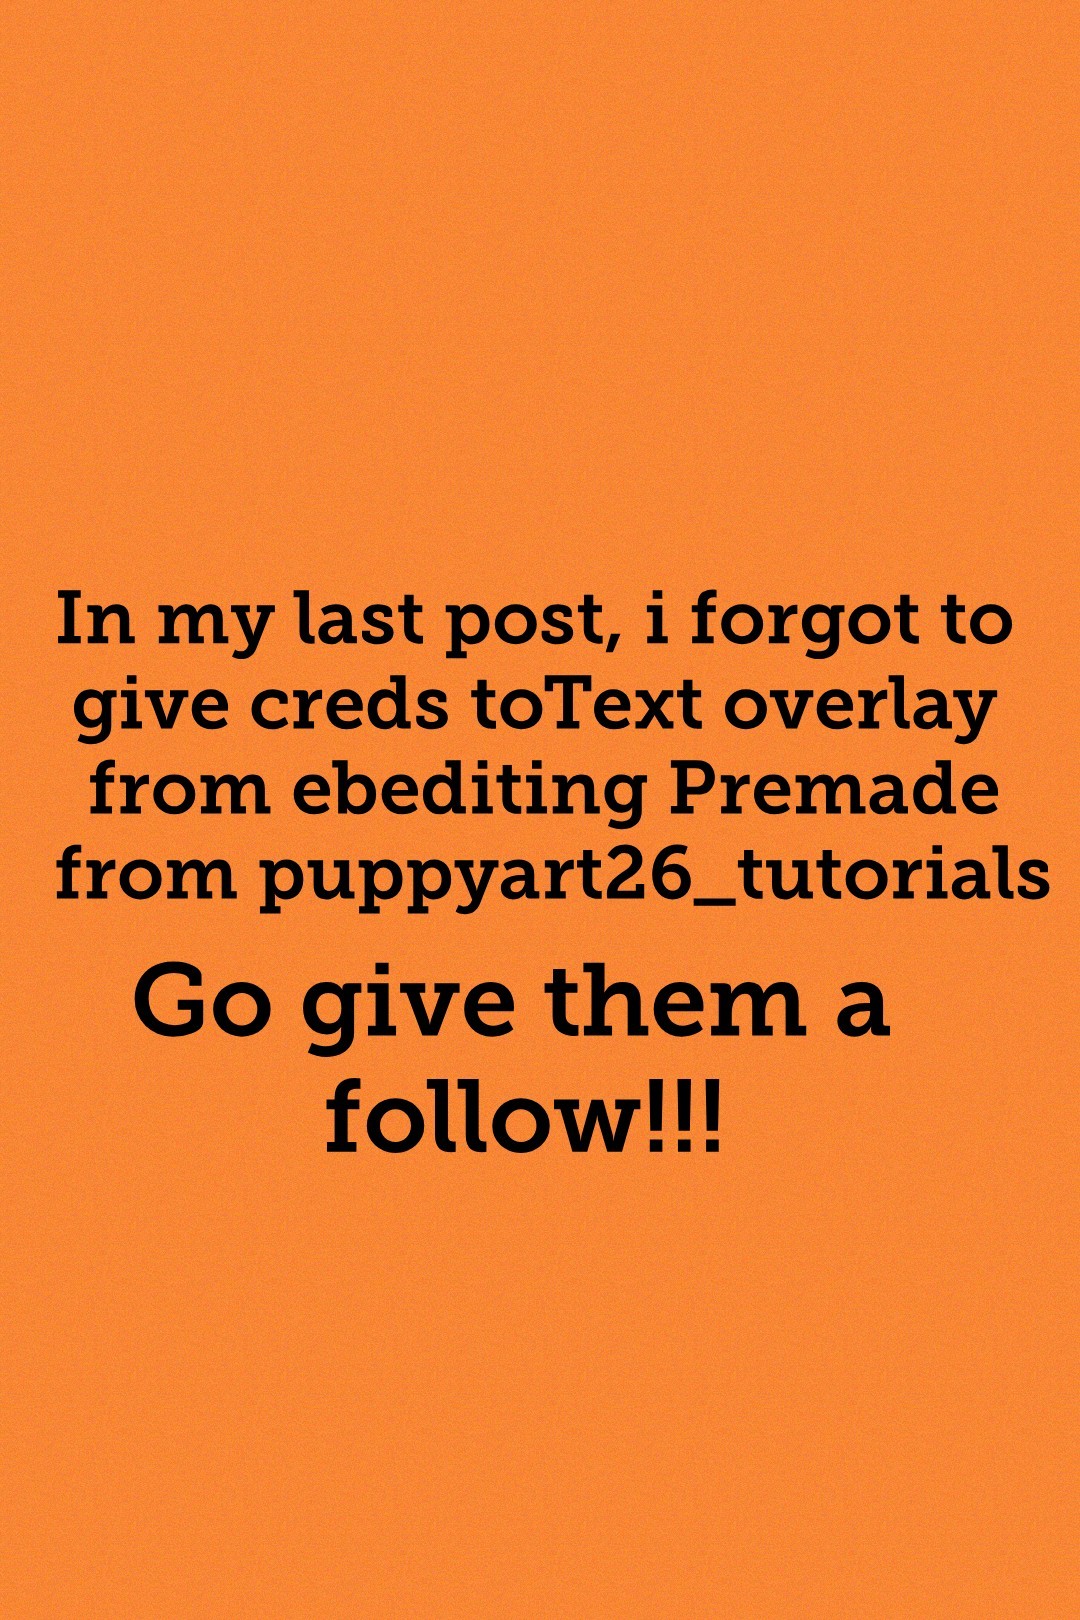 Go give them a follow!!!